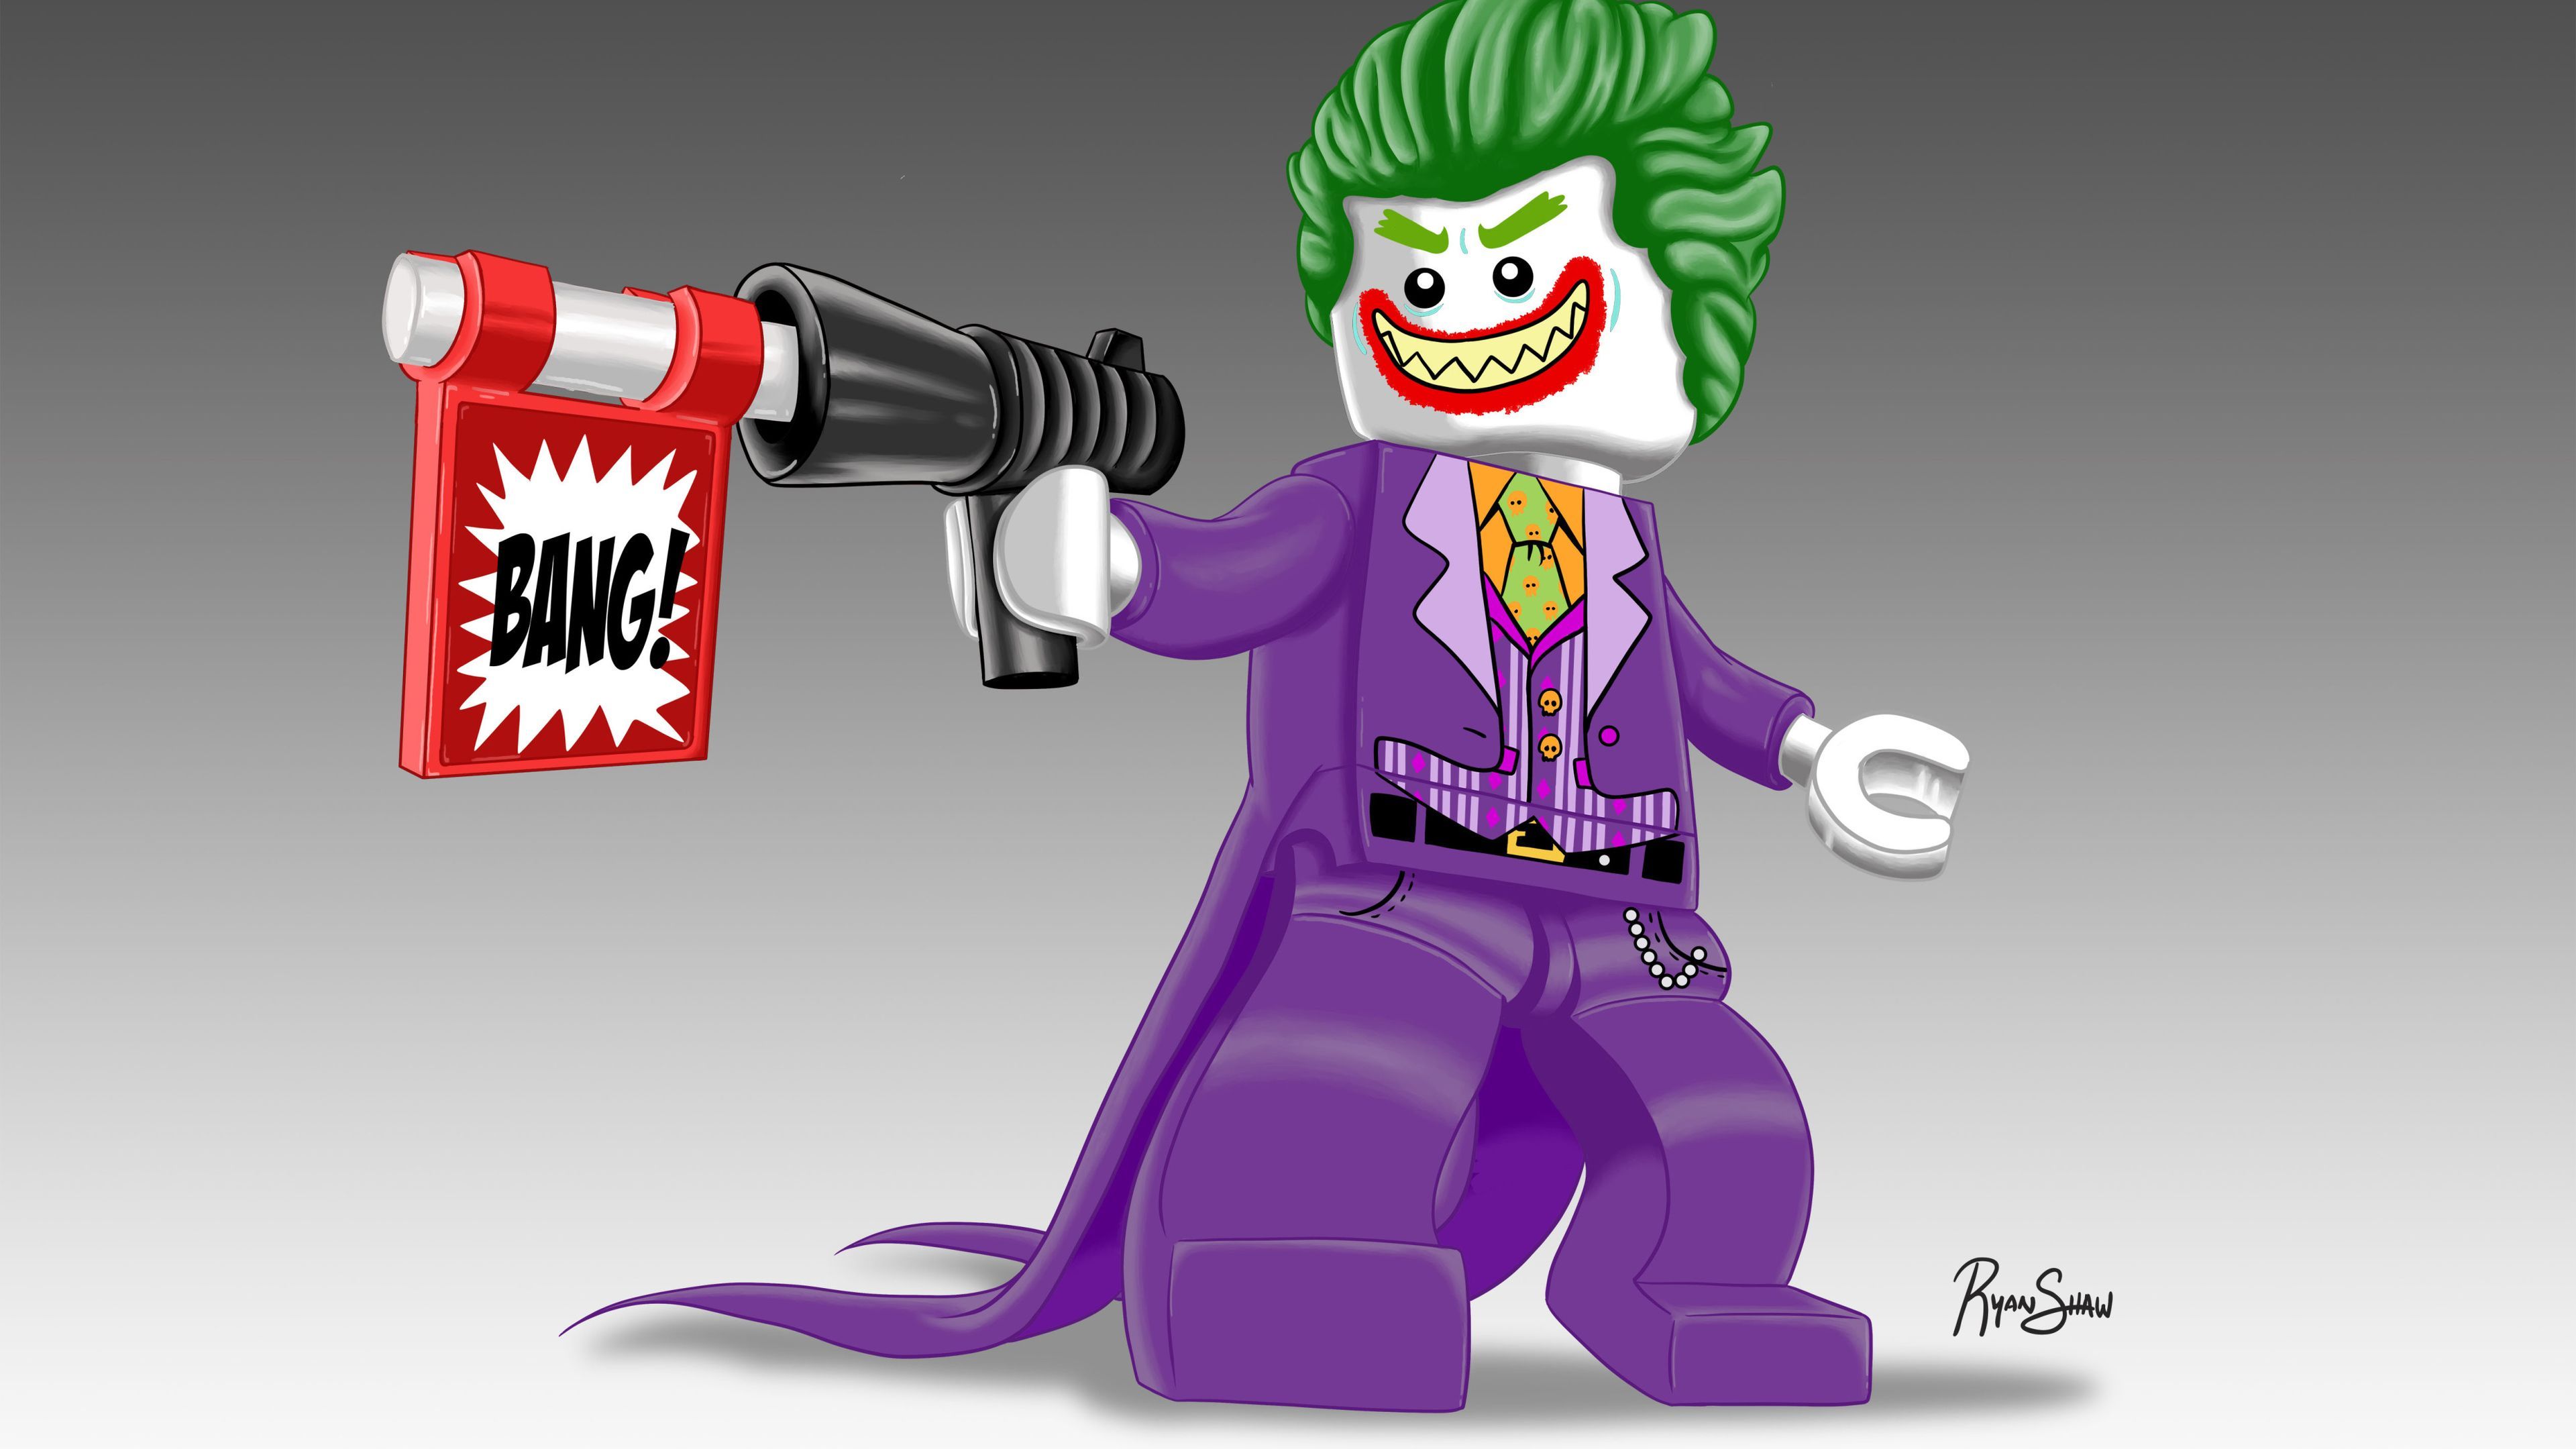 Lego Joker Artwork 4k Supervillain Wallpaper, Superheroes Wallpaper, Joker Wallpaper, Hd Wallpaper, 5k Wallpaper, 4k. Joker Artwork, Joker Wallpaper, Joker